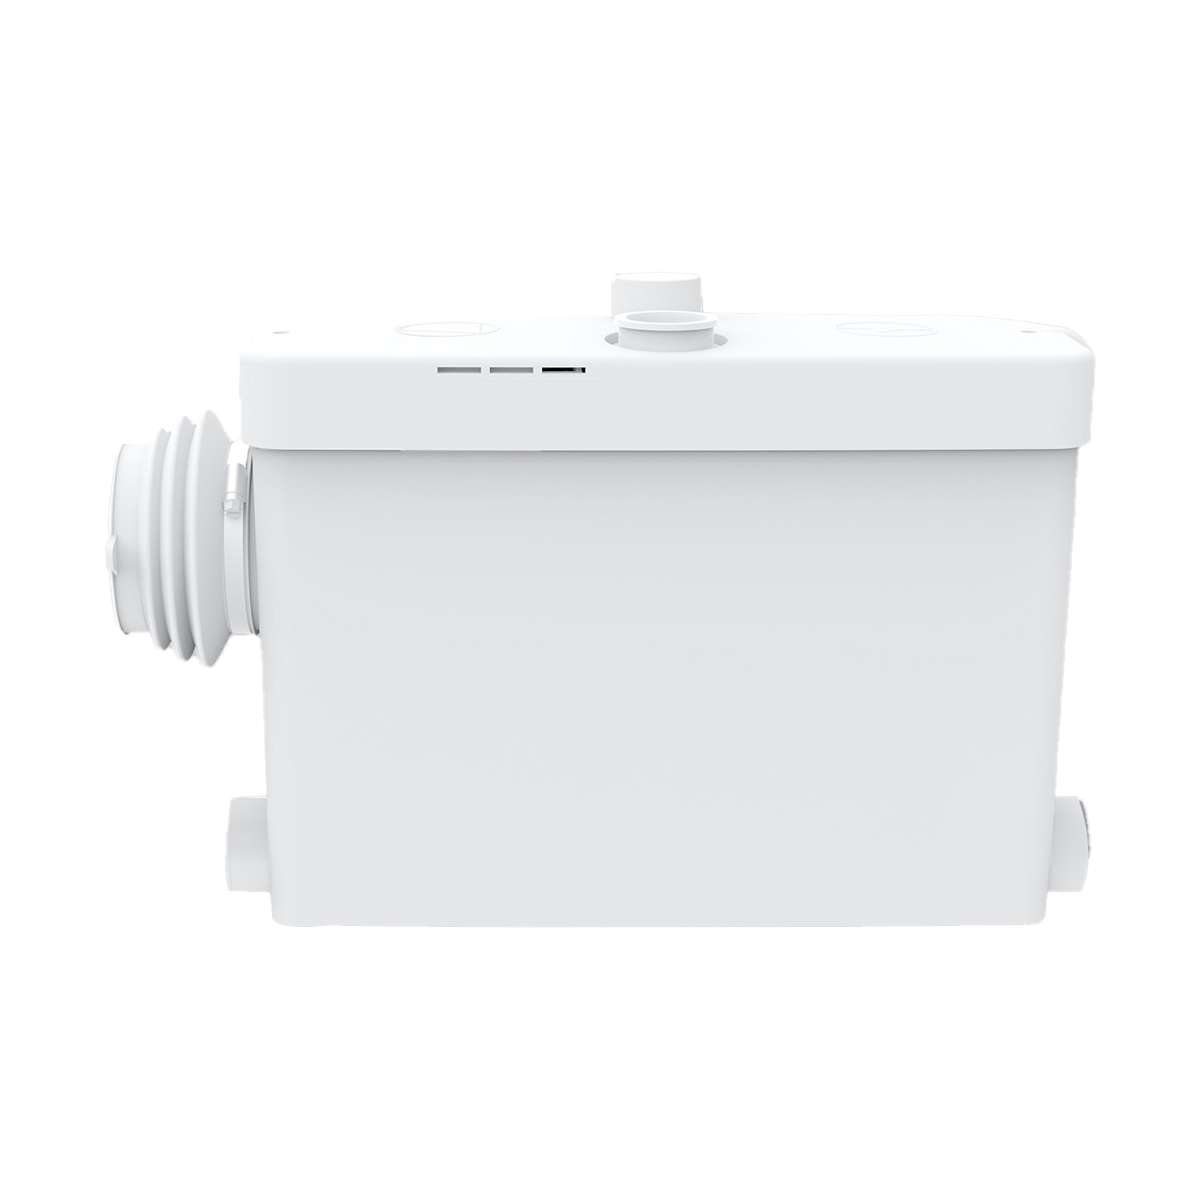 Triturador sanitario Maldic SENSE V4 Compact para baños completos con inodoro suspendido con referencia 405 de la marca MALDIC